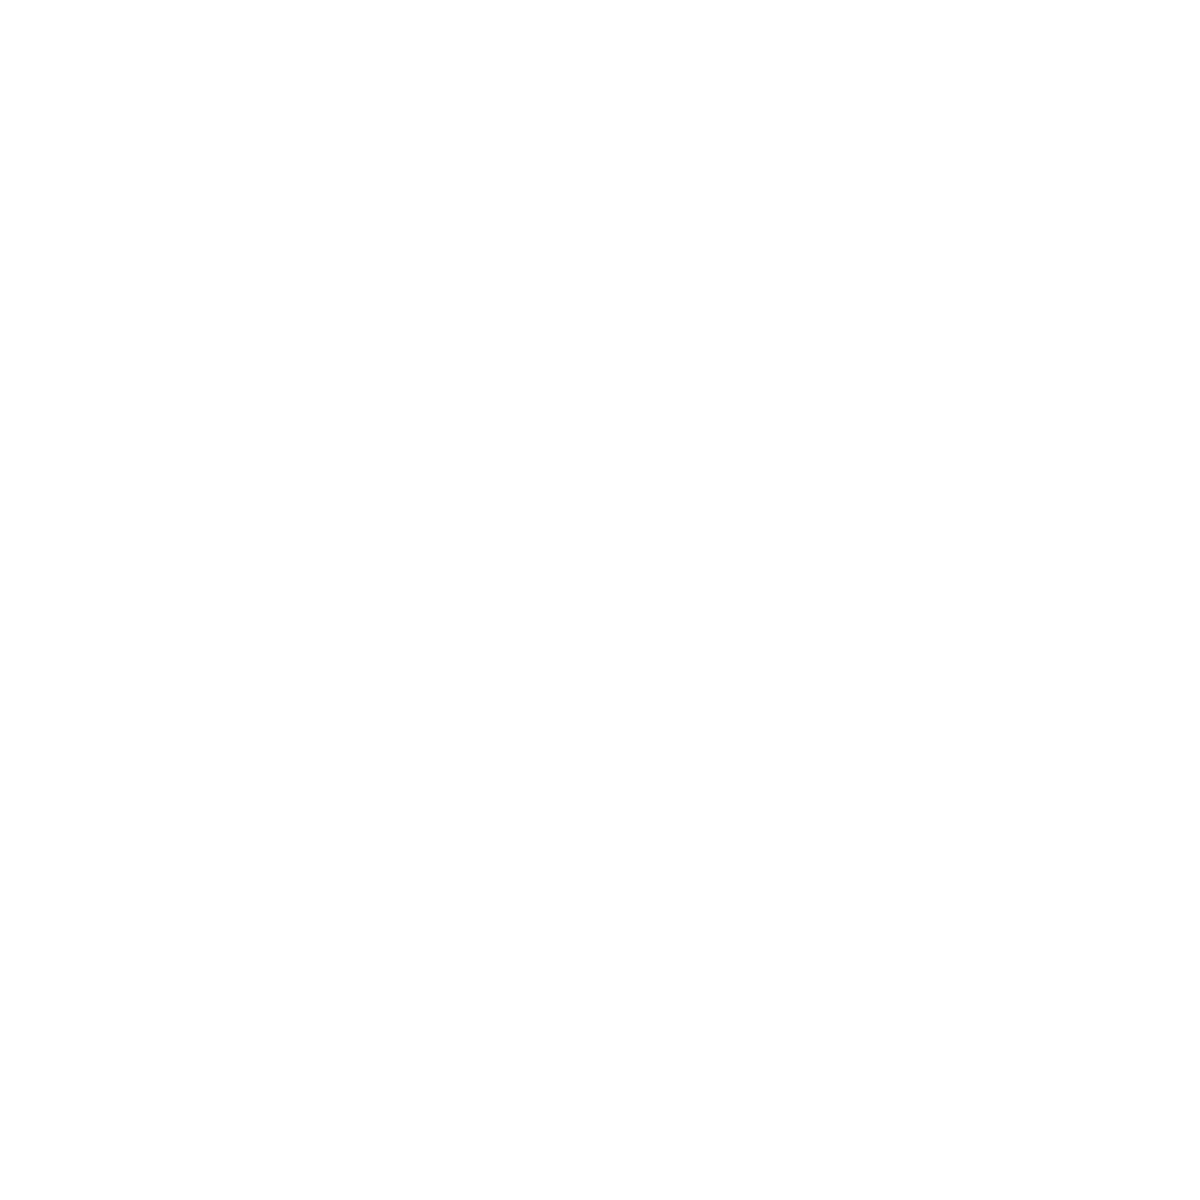 Racksimpstufchuck: ver first dates online